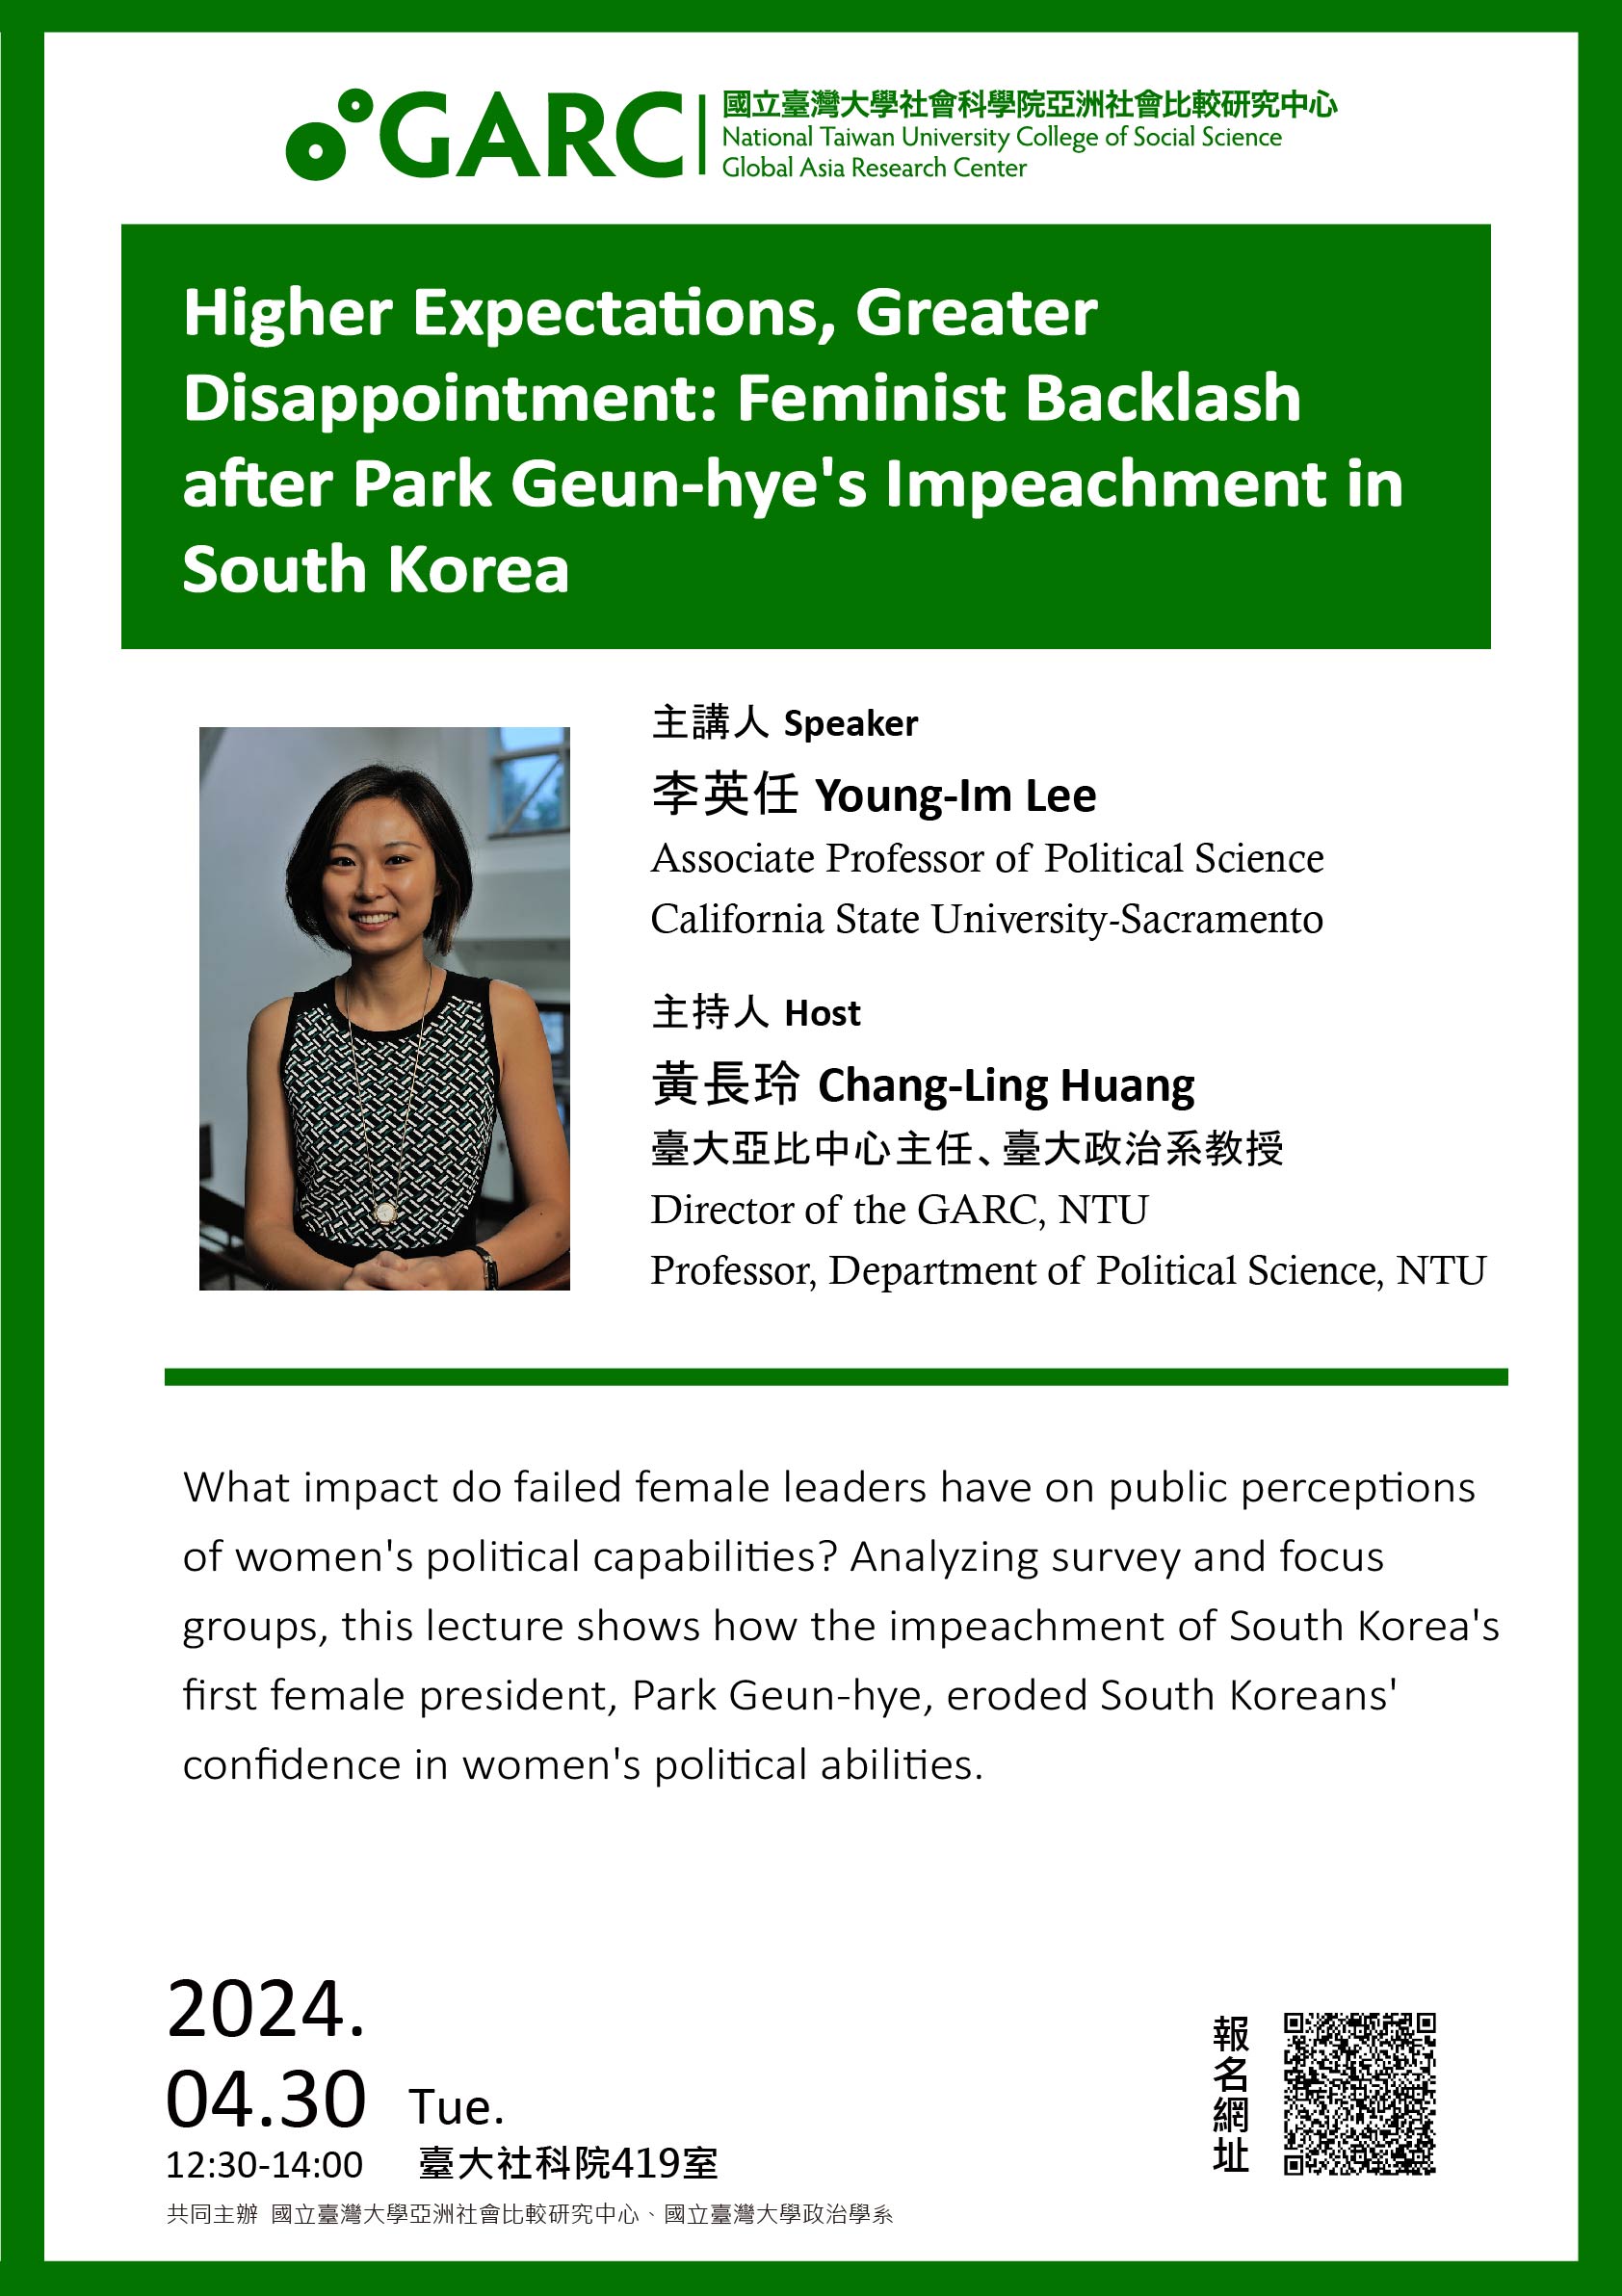 【活動資訊】2024.03.30Higher Expectations, Greater Disappointment: Feminist Backlash after Park Geun-hye's Impeachment in South Korea